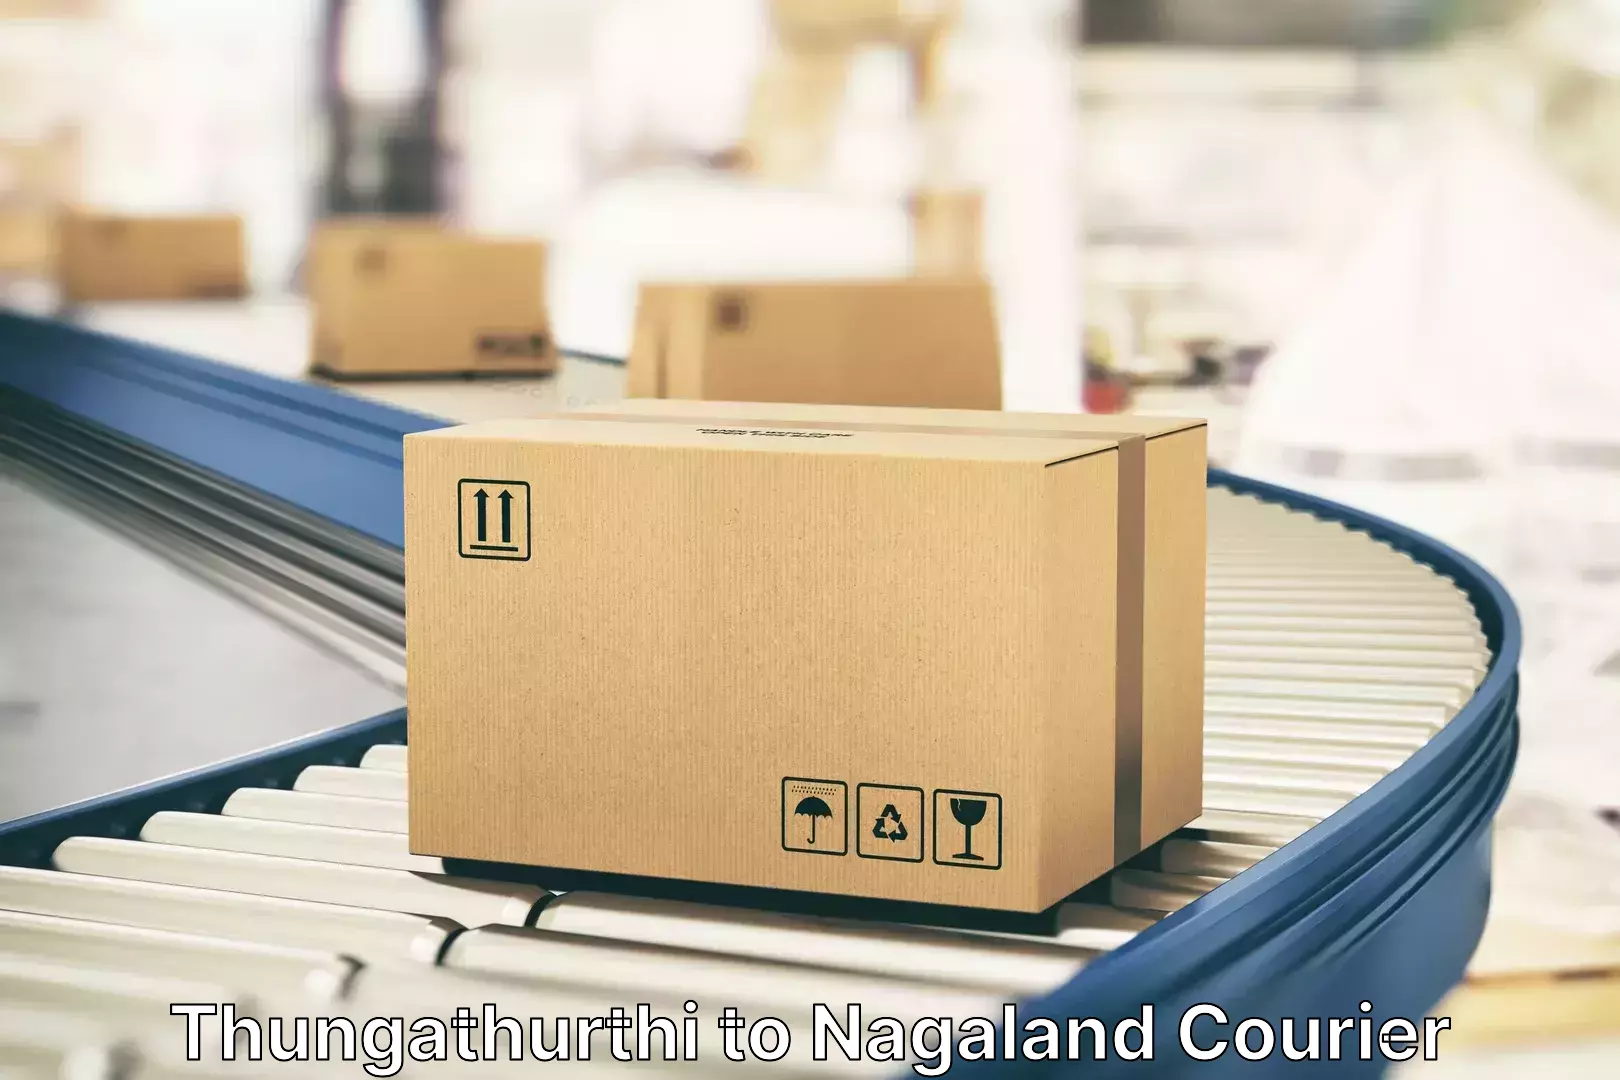 Luggage shipping logistics Thungathurthi to Nagaland